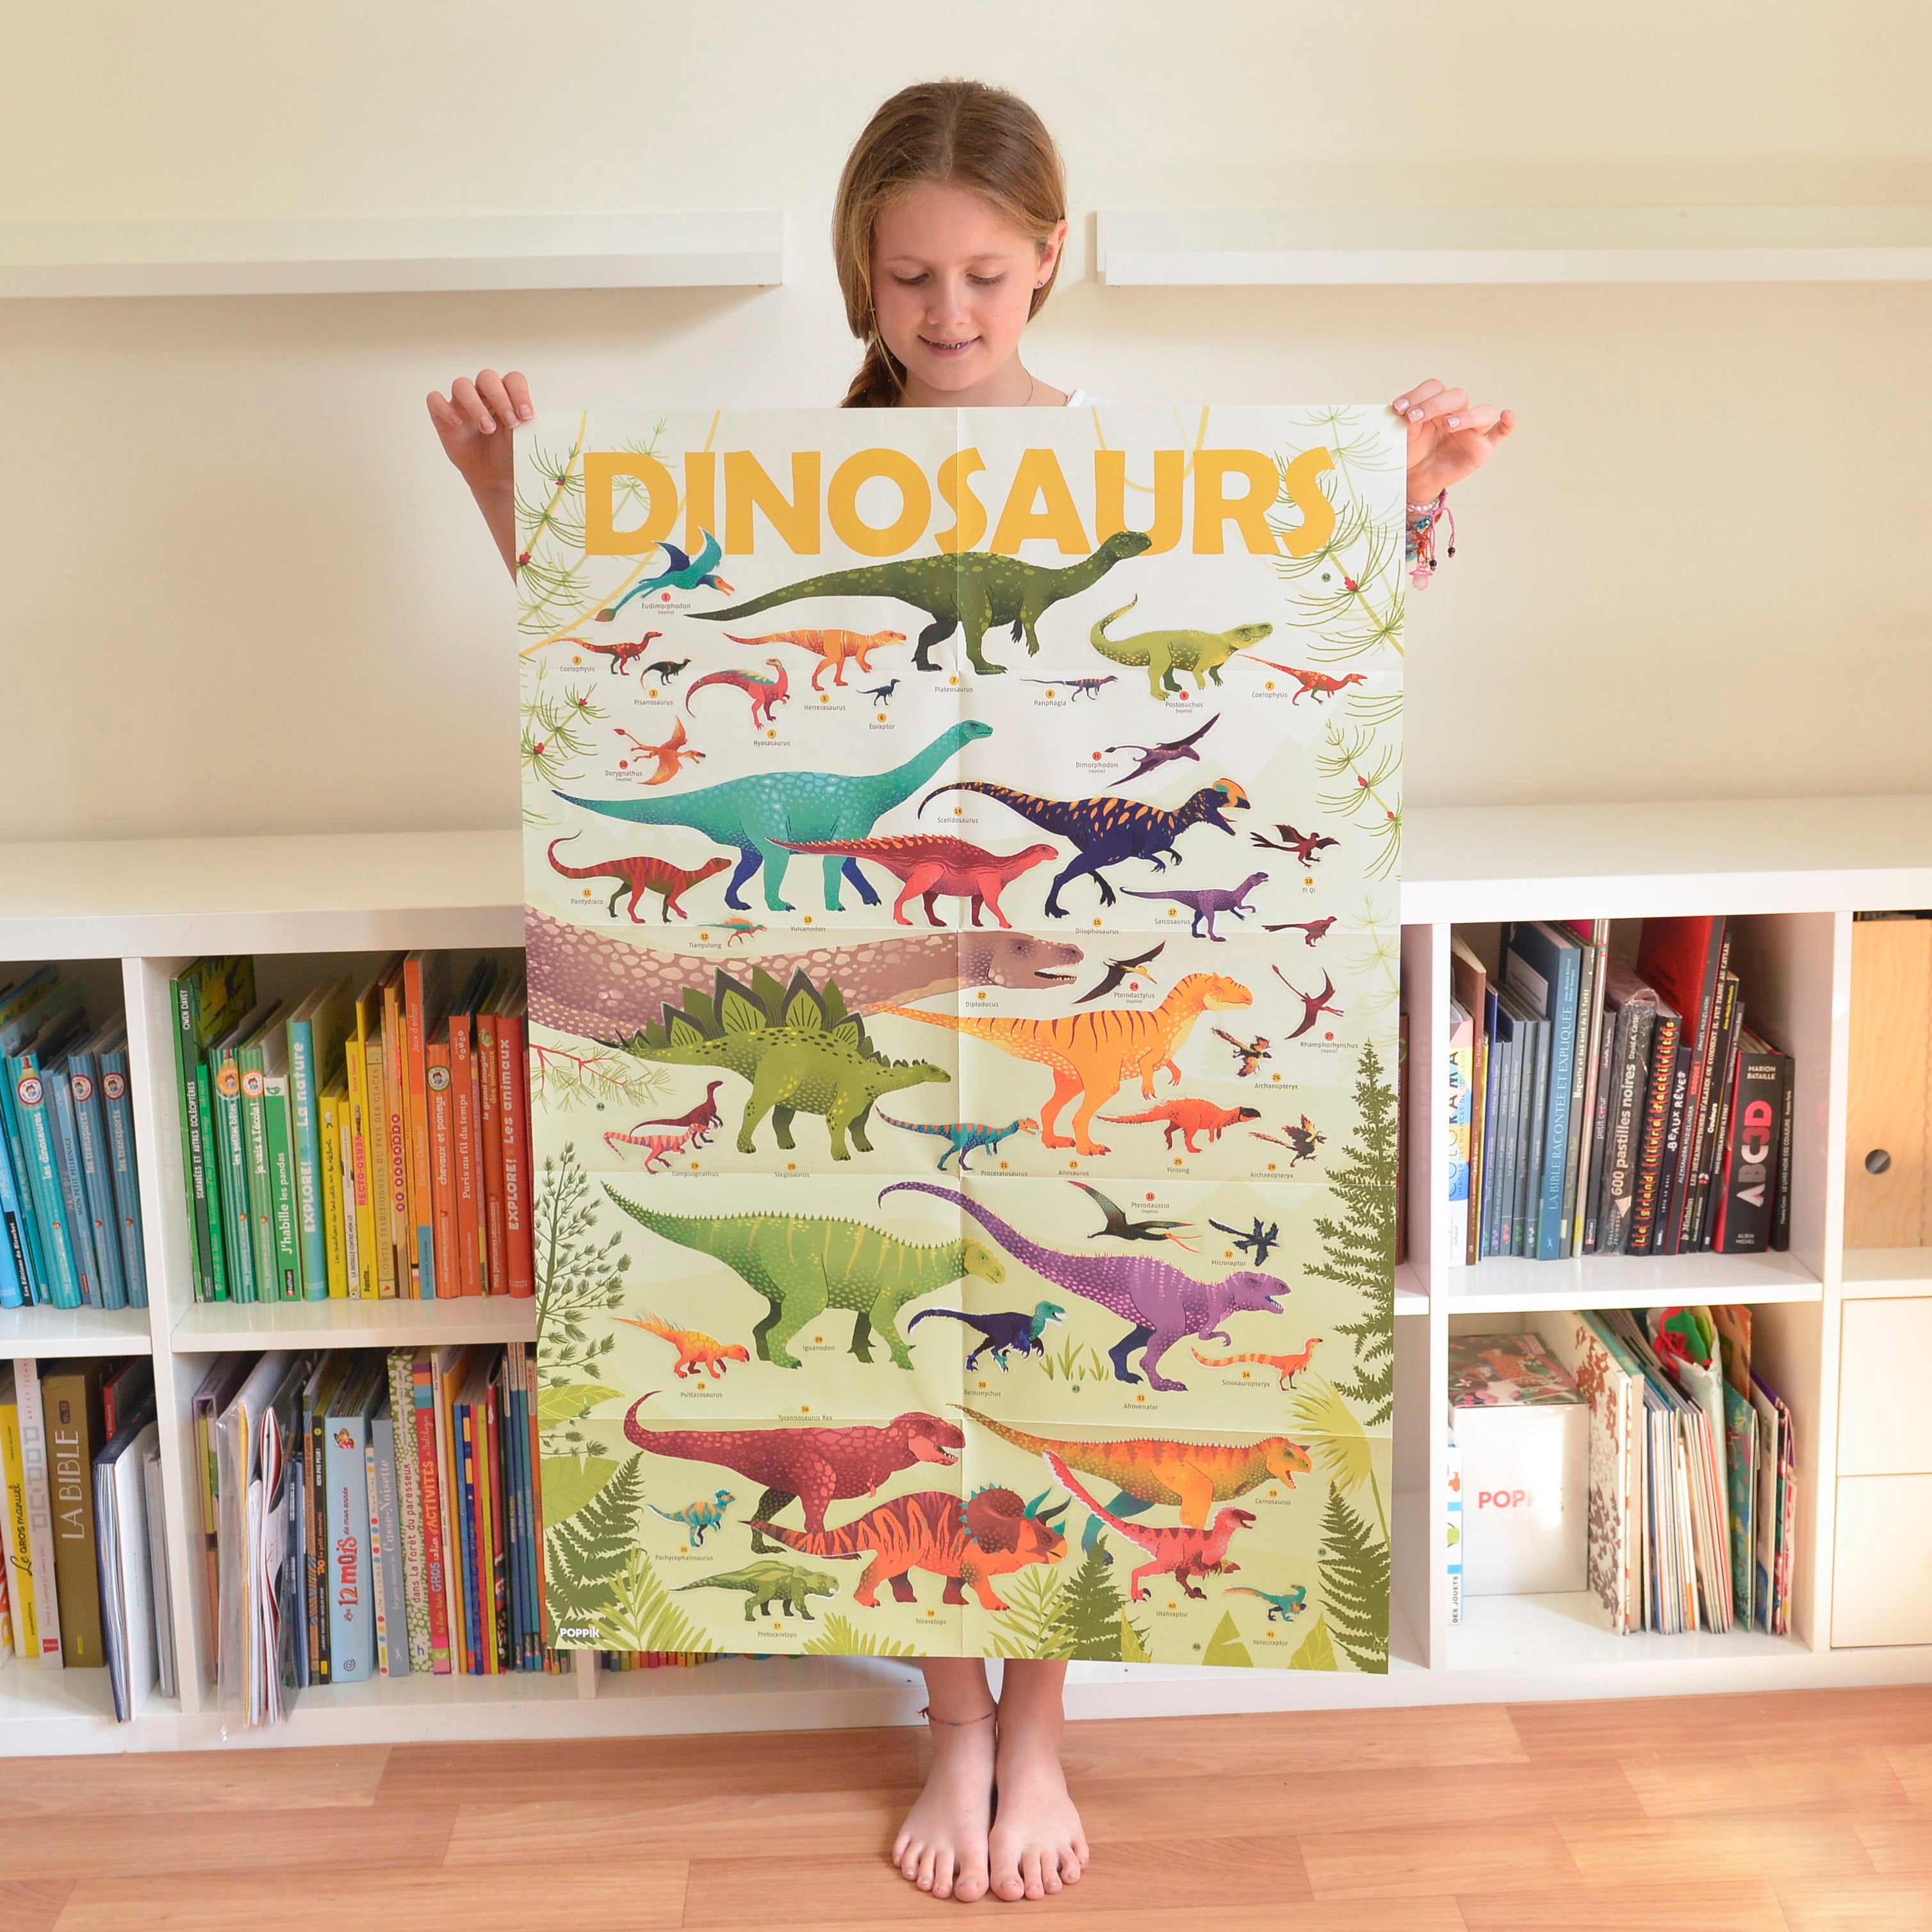 Poppik Educational Sticker Poster | Dinosaurs